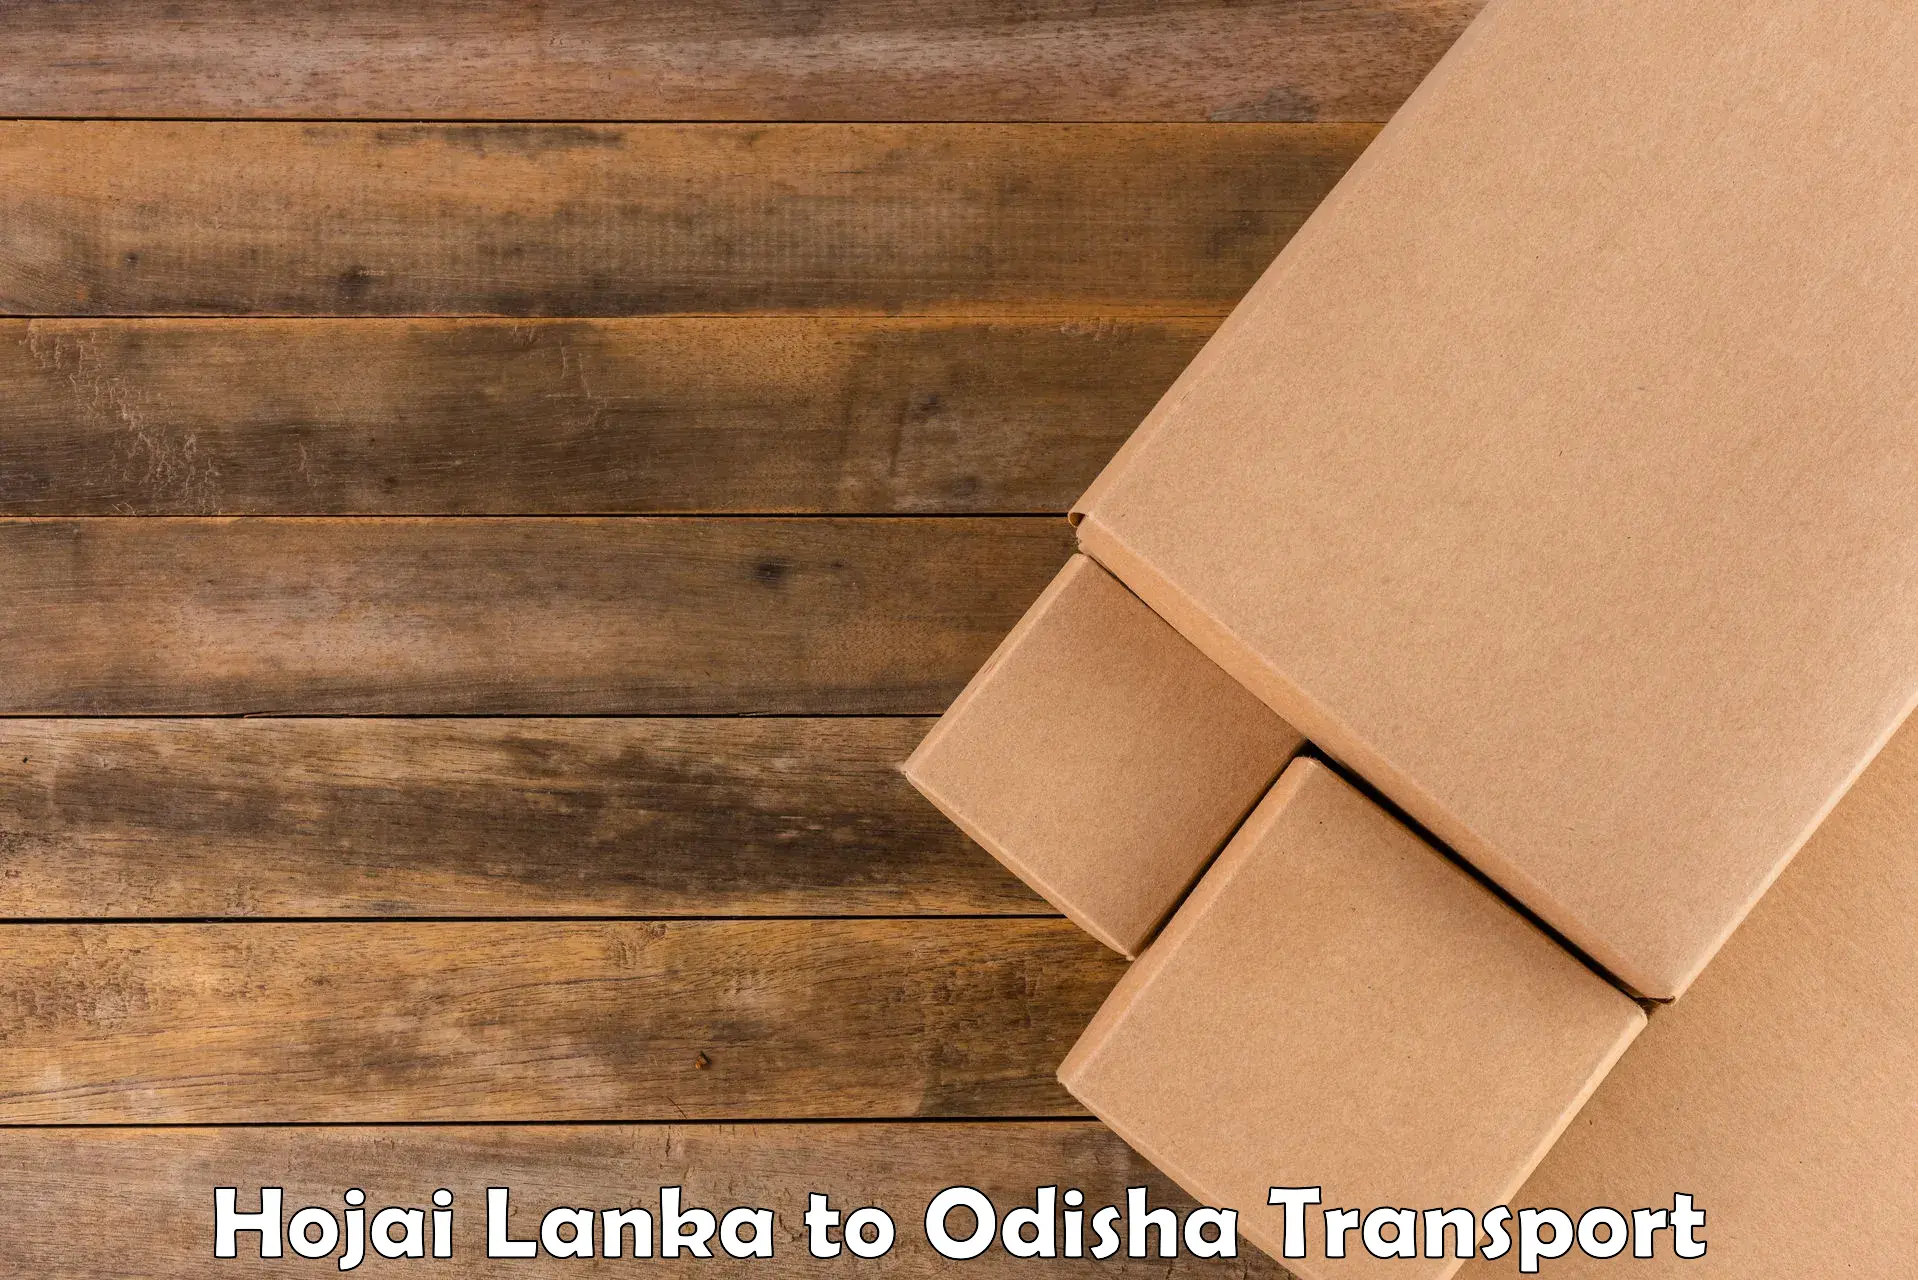 Parcel transport services Hojai Lanka to Balimela